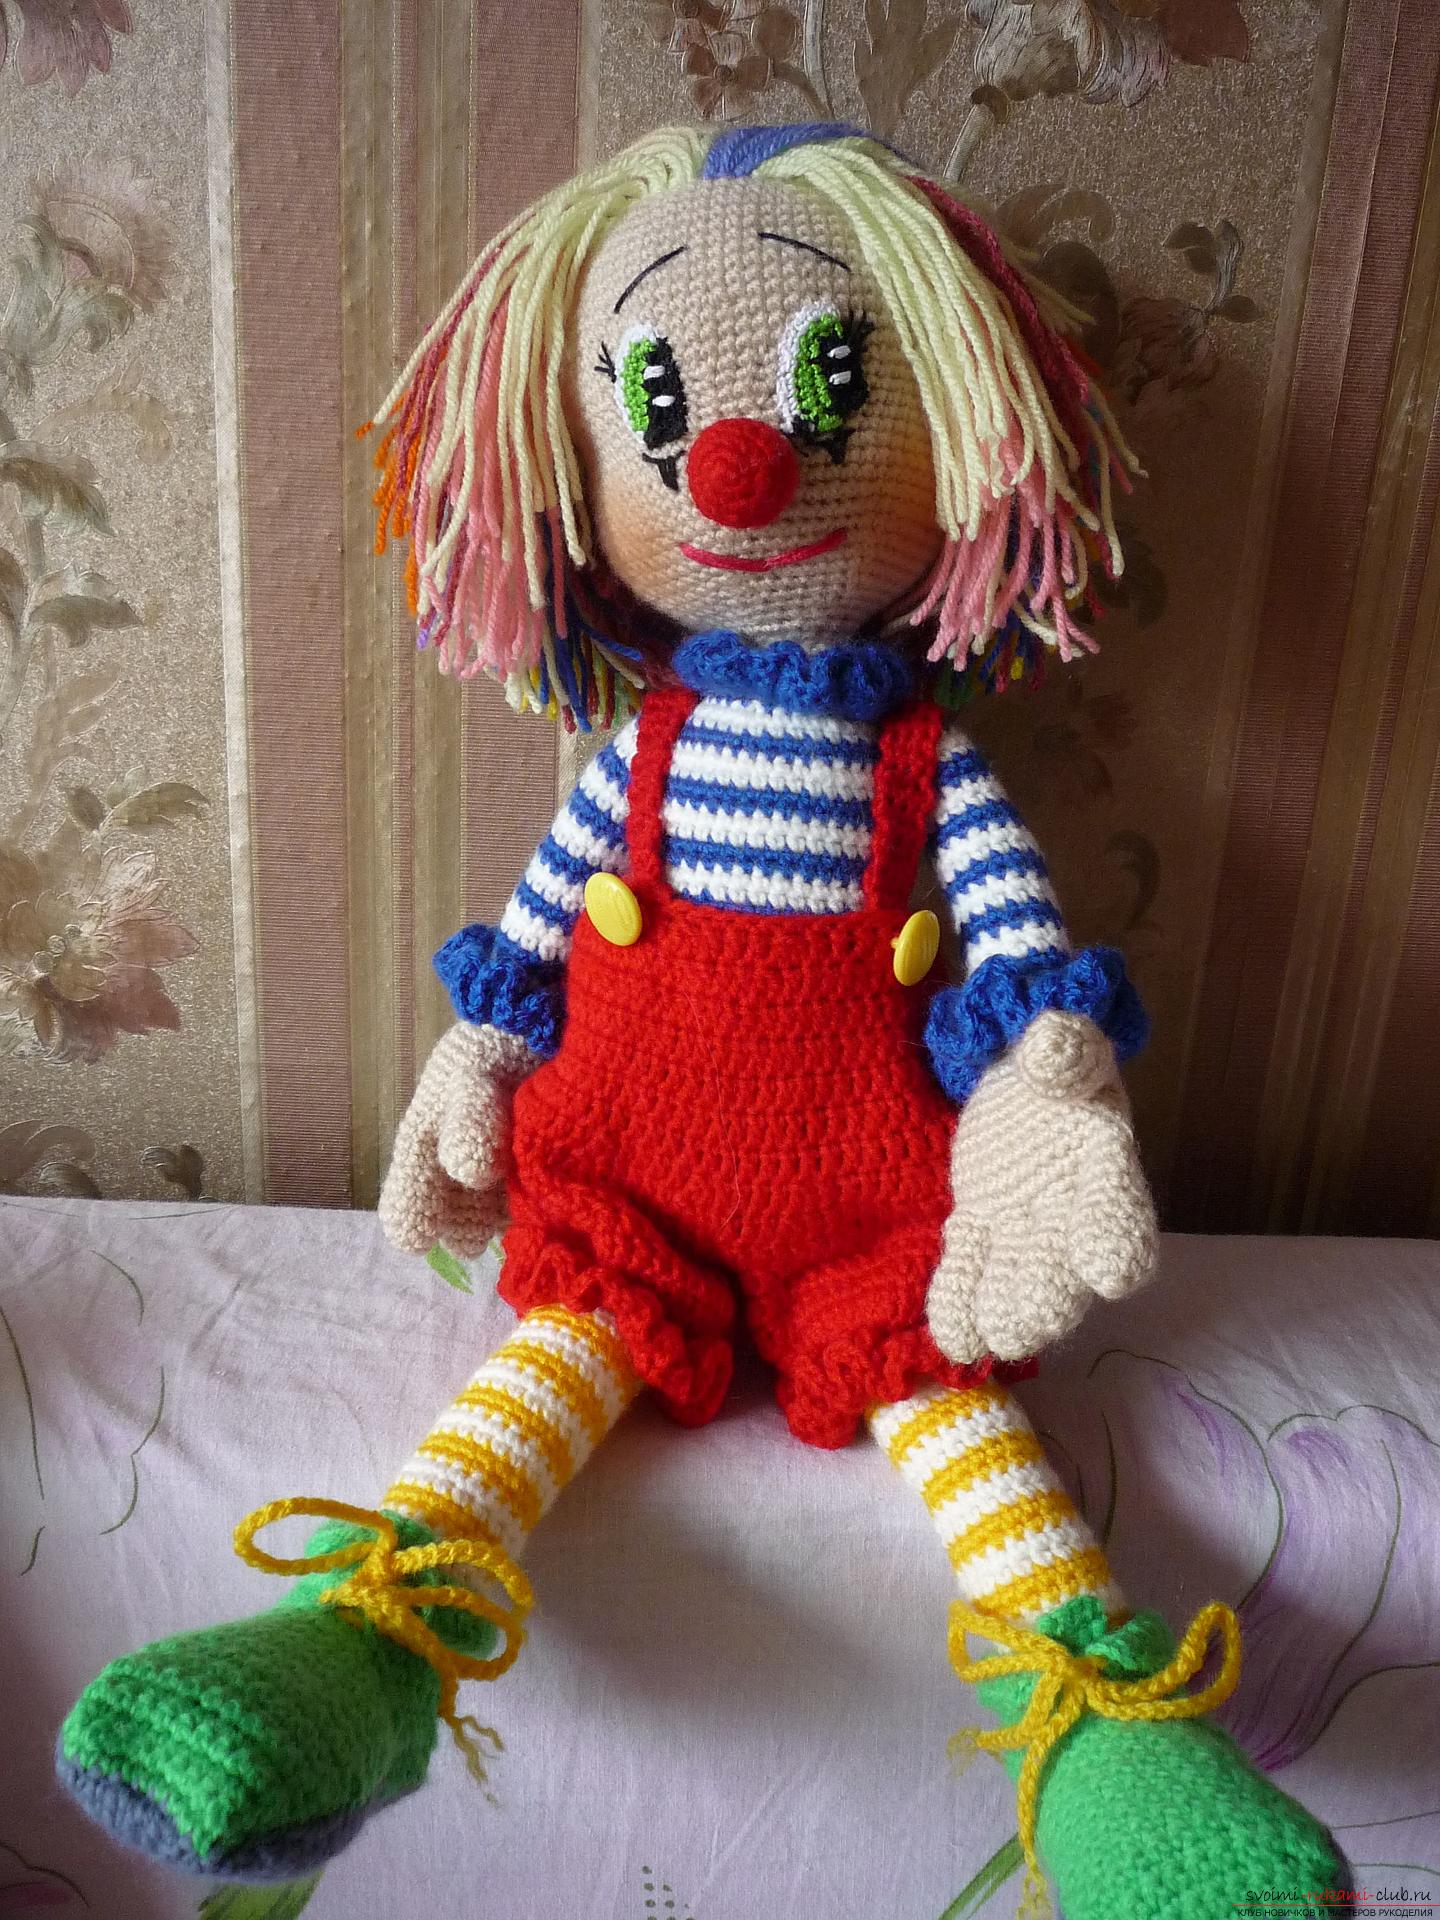 Подробные фотографии игрушки клоуна, связанного крючком из разноцветной пряжи. Фото №2